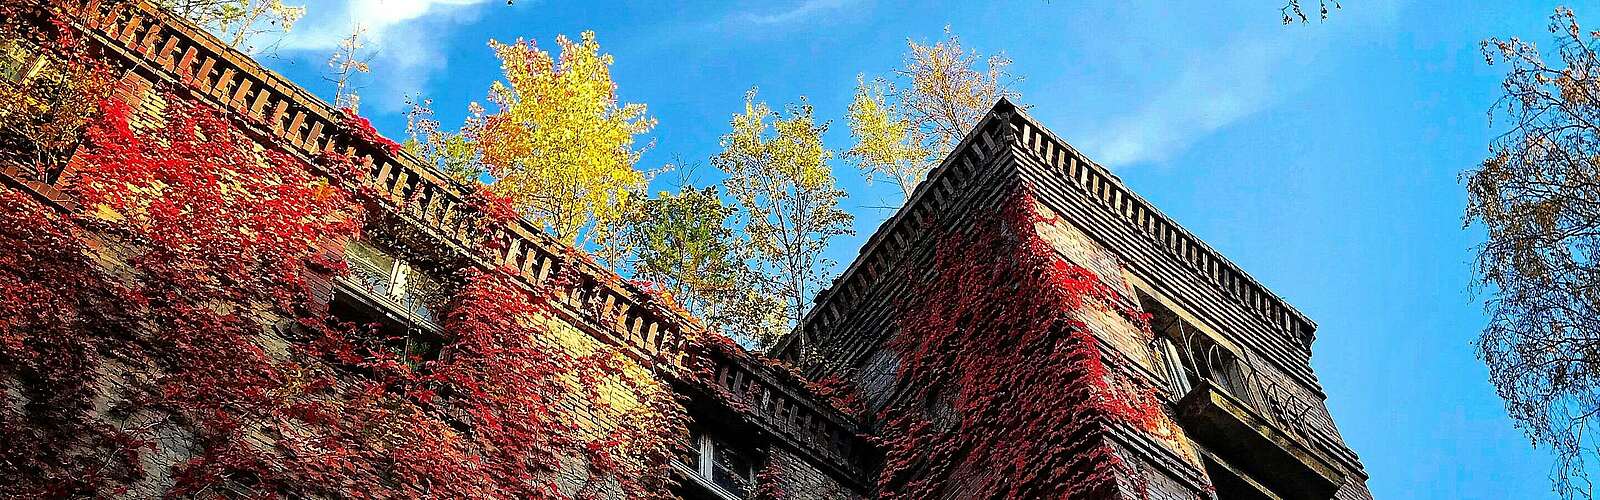 Beelitz Heilstätten im Herbst,
        
    

        Foto: Fotograf / Lizenz - Media Import/Claudia Wegener